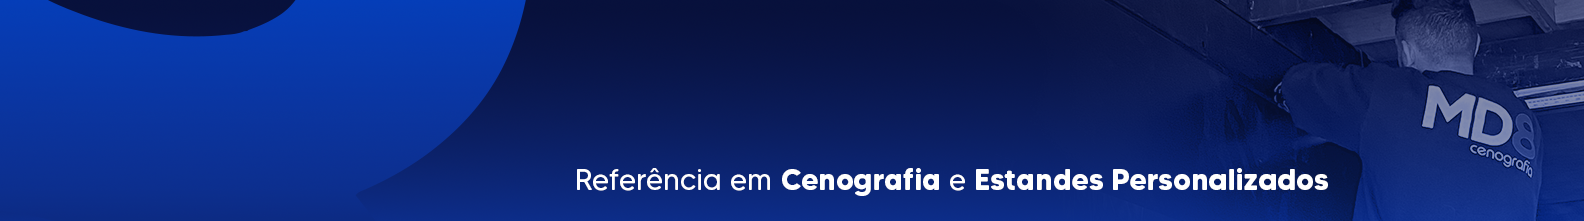 Profil-Banner von Guilherme Barão de Mello